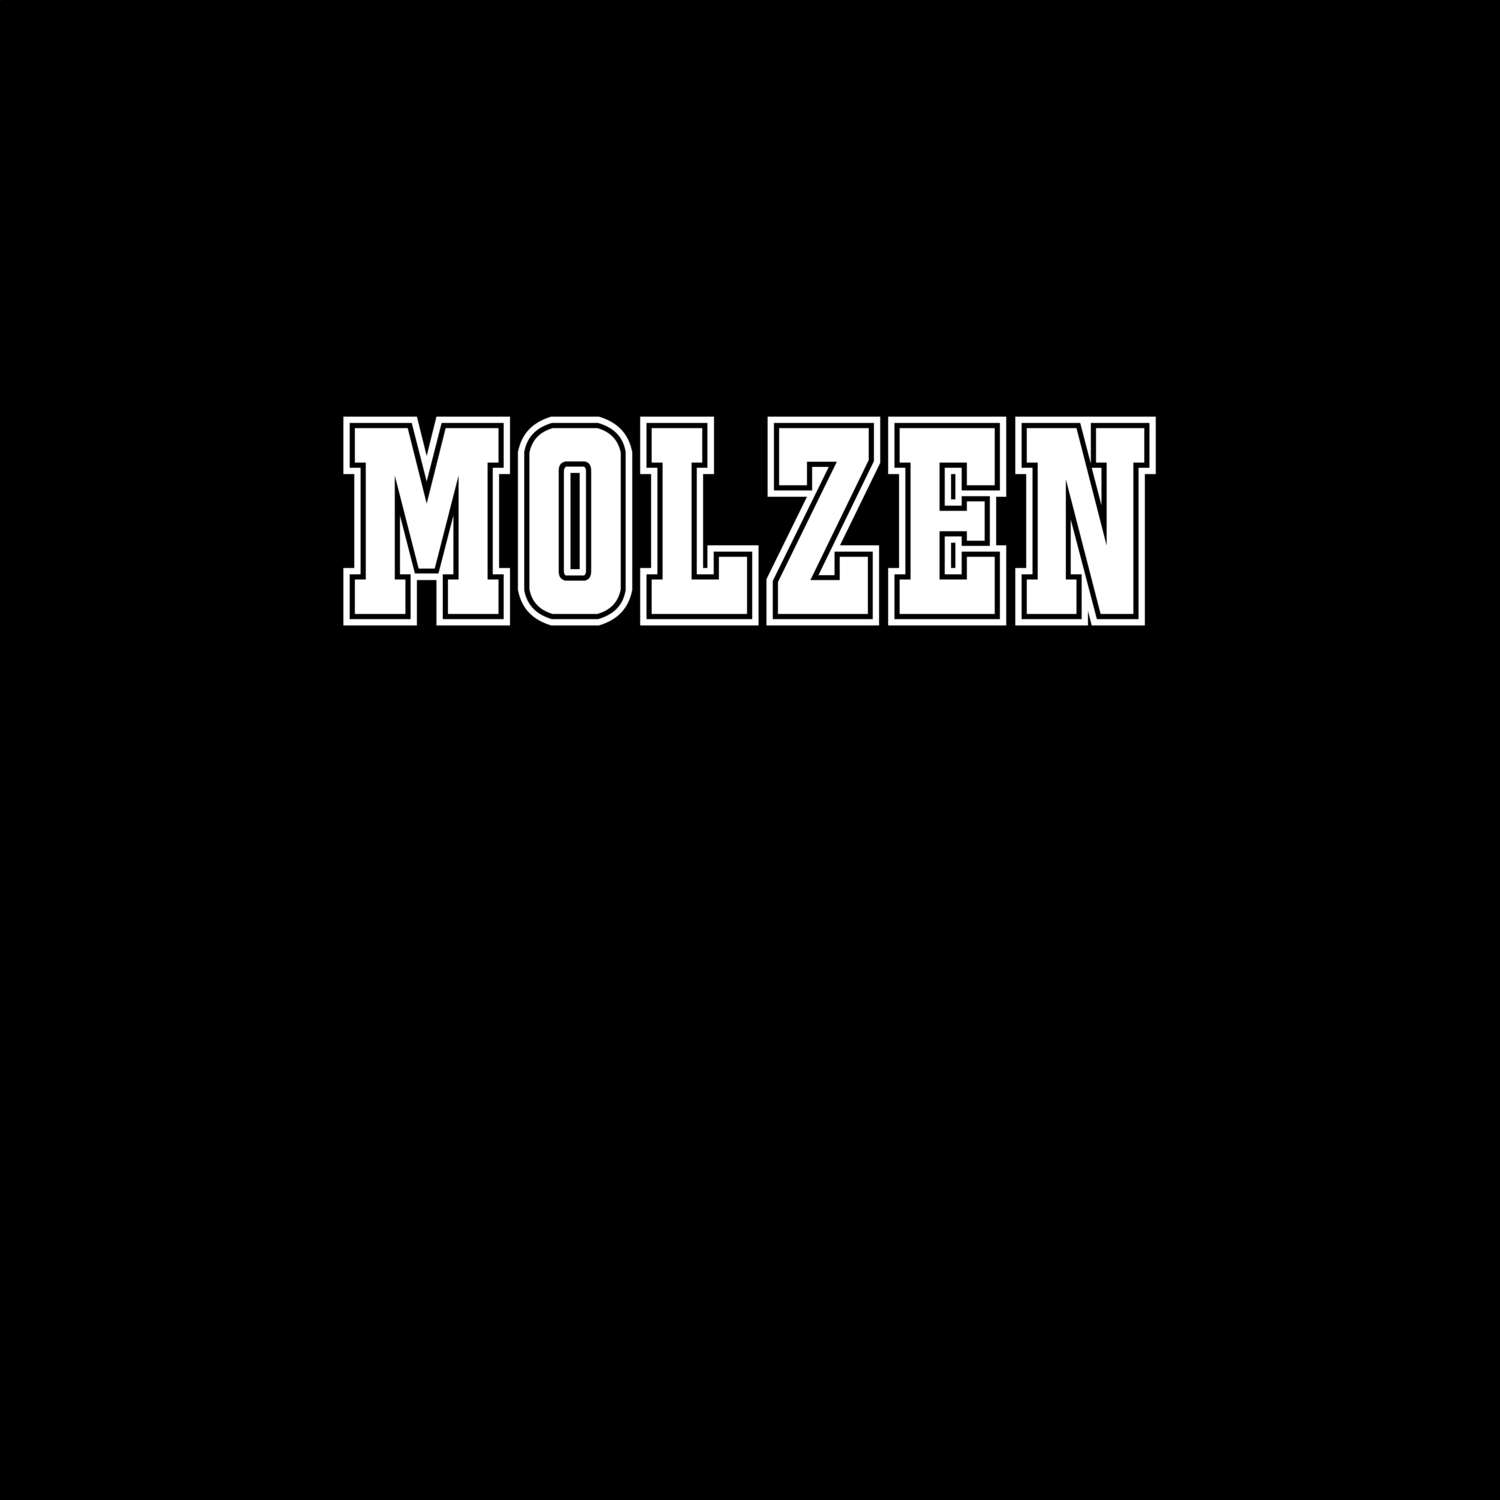 Molzen T-Shirt »Classic«